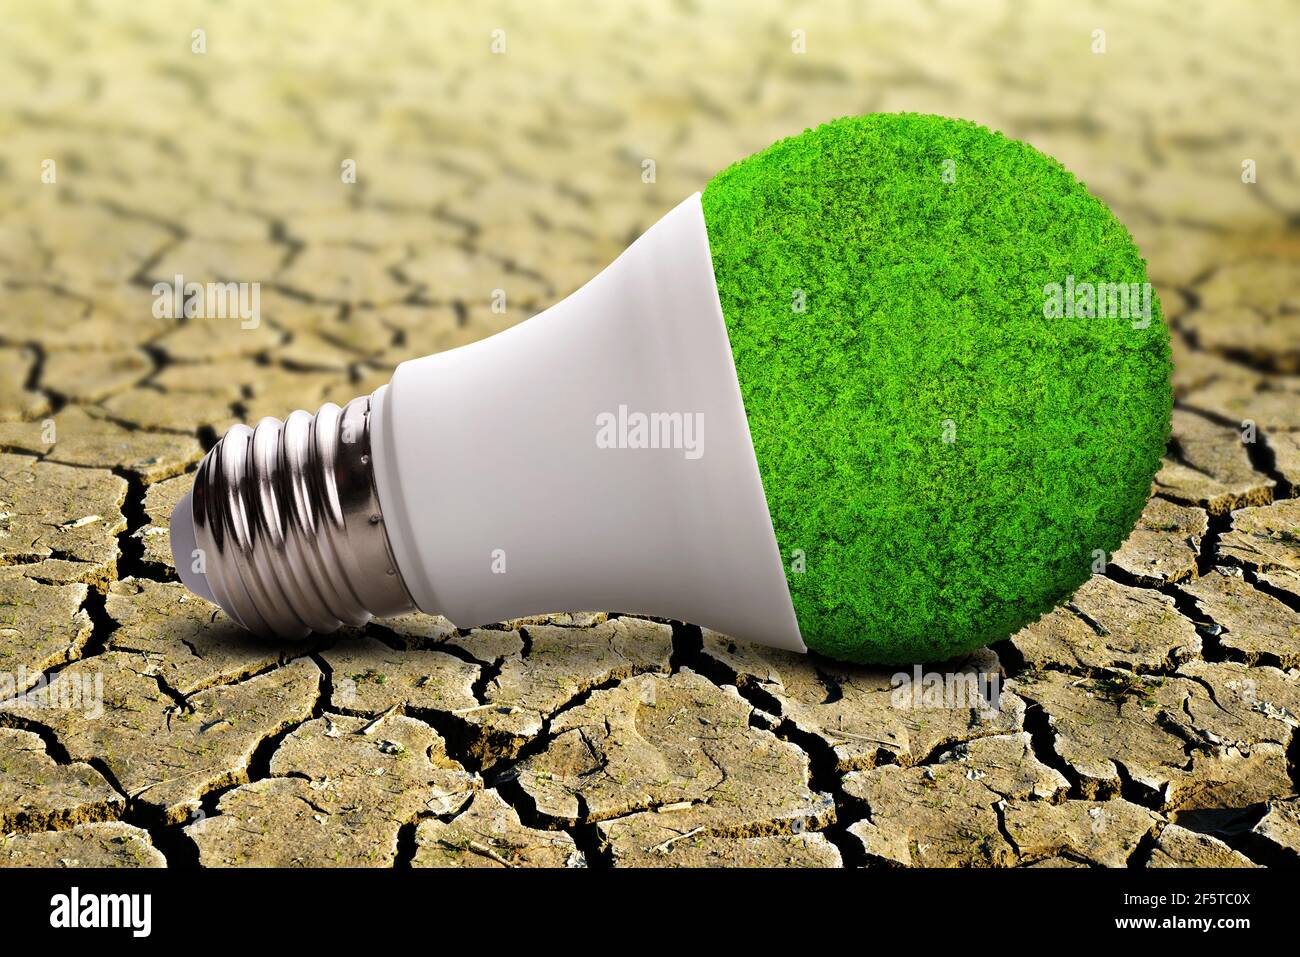 Bombilla LED ECO sobre tierra seca agrietada. Conceptos de conservación ambiental, calentamiento global o energía limpia. Foto de stock